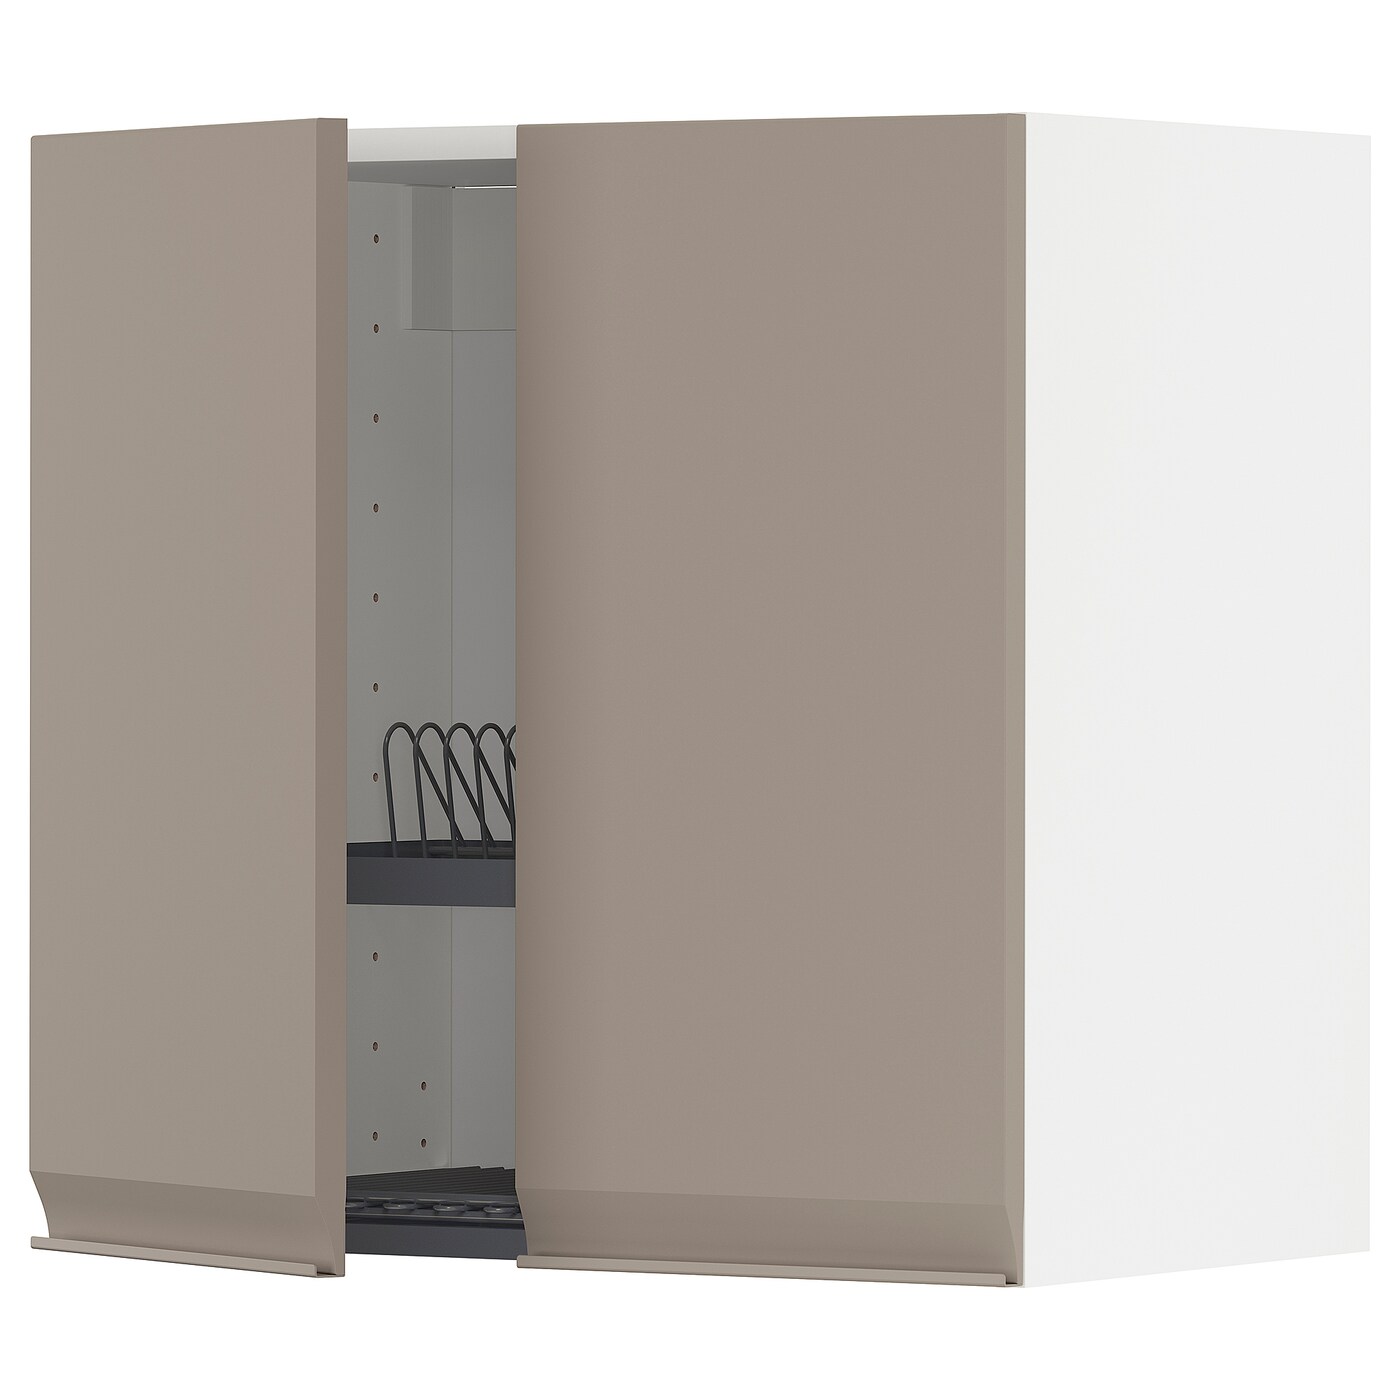 Навесной шкаф с сушилкой - METOD IKEA/ МЕТОД ИКЕА, 60х60 см, белый/светло-коричневый